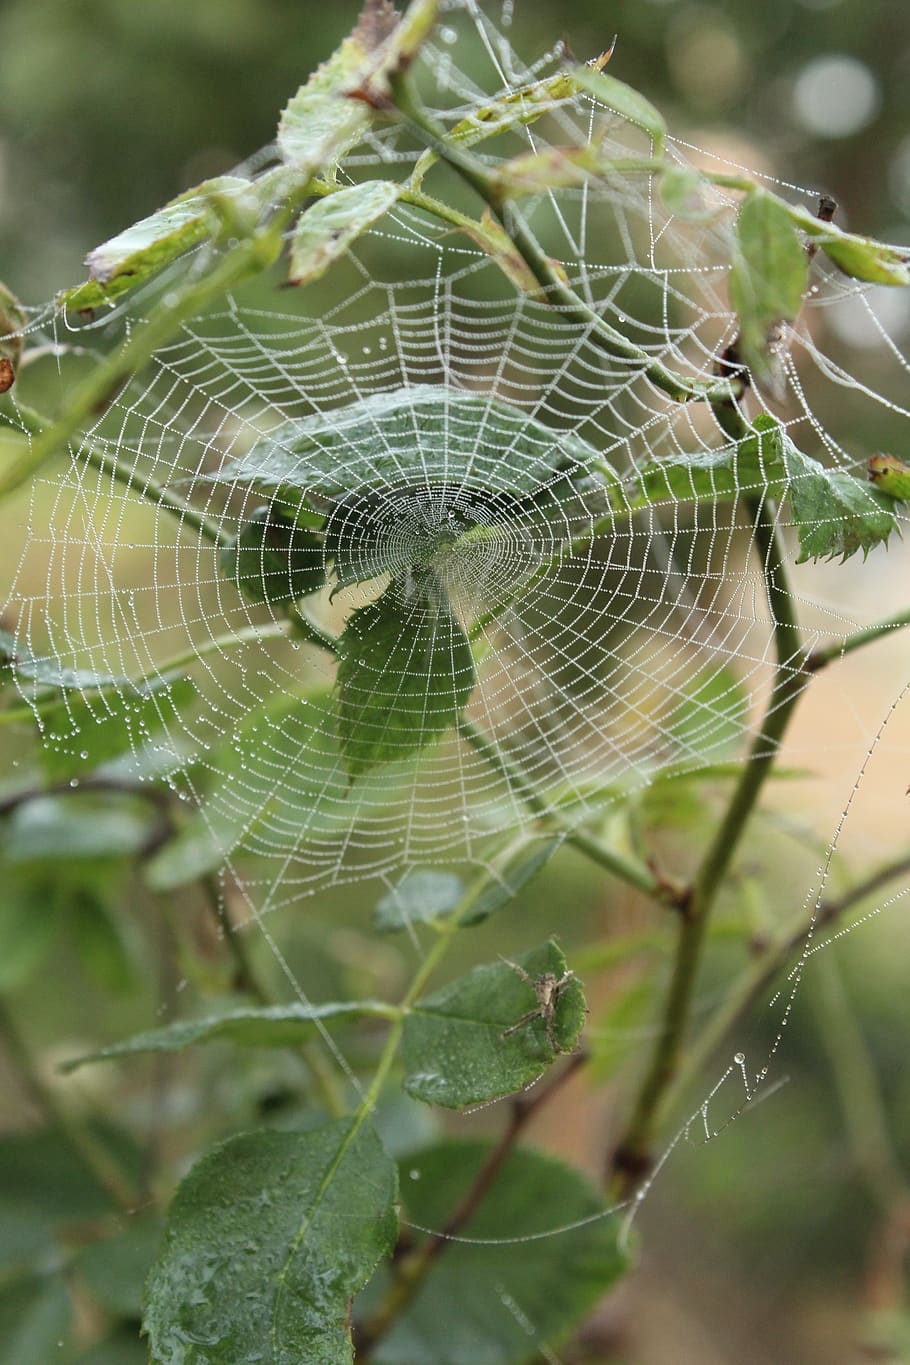 teia de aranha, aranha, web, verde, fragilidade, close-up, vulnerabilidade, foco em primeiro plano, temas de animais, invertebrado